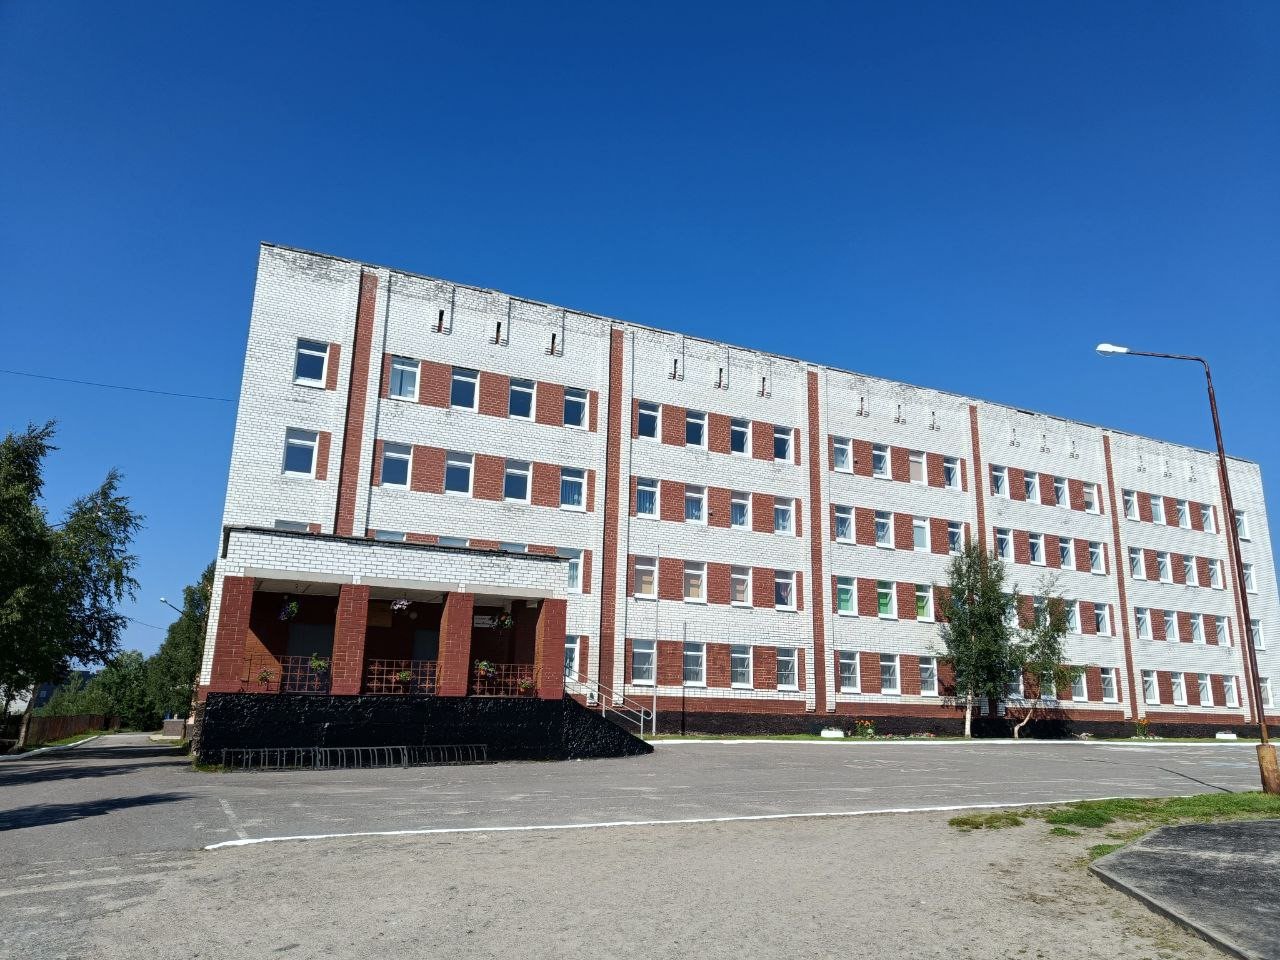 Губернатор Андрей Чибис осмотрел реконструированные библиотеку и школу в Высоком